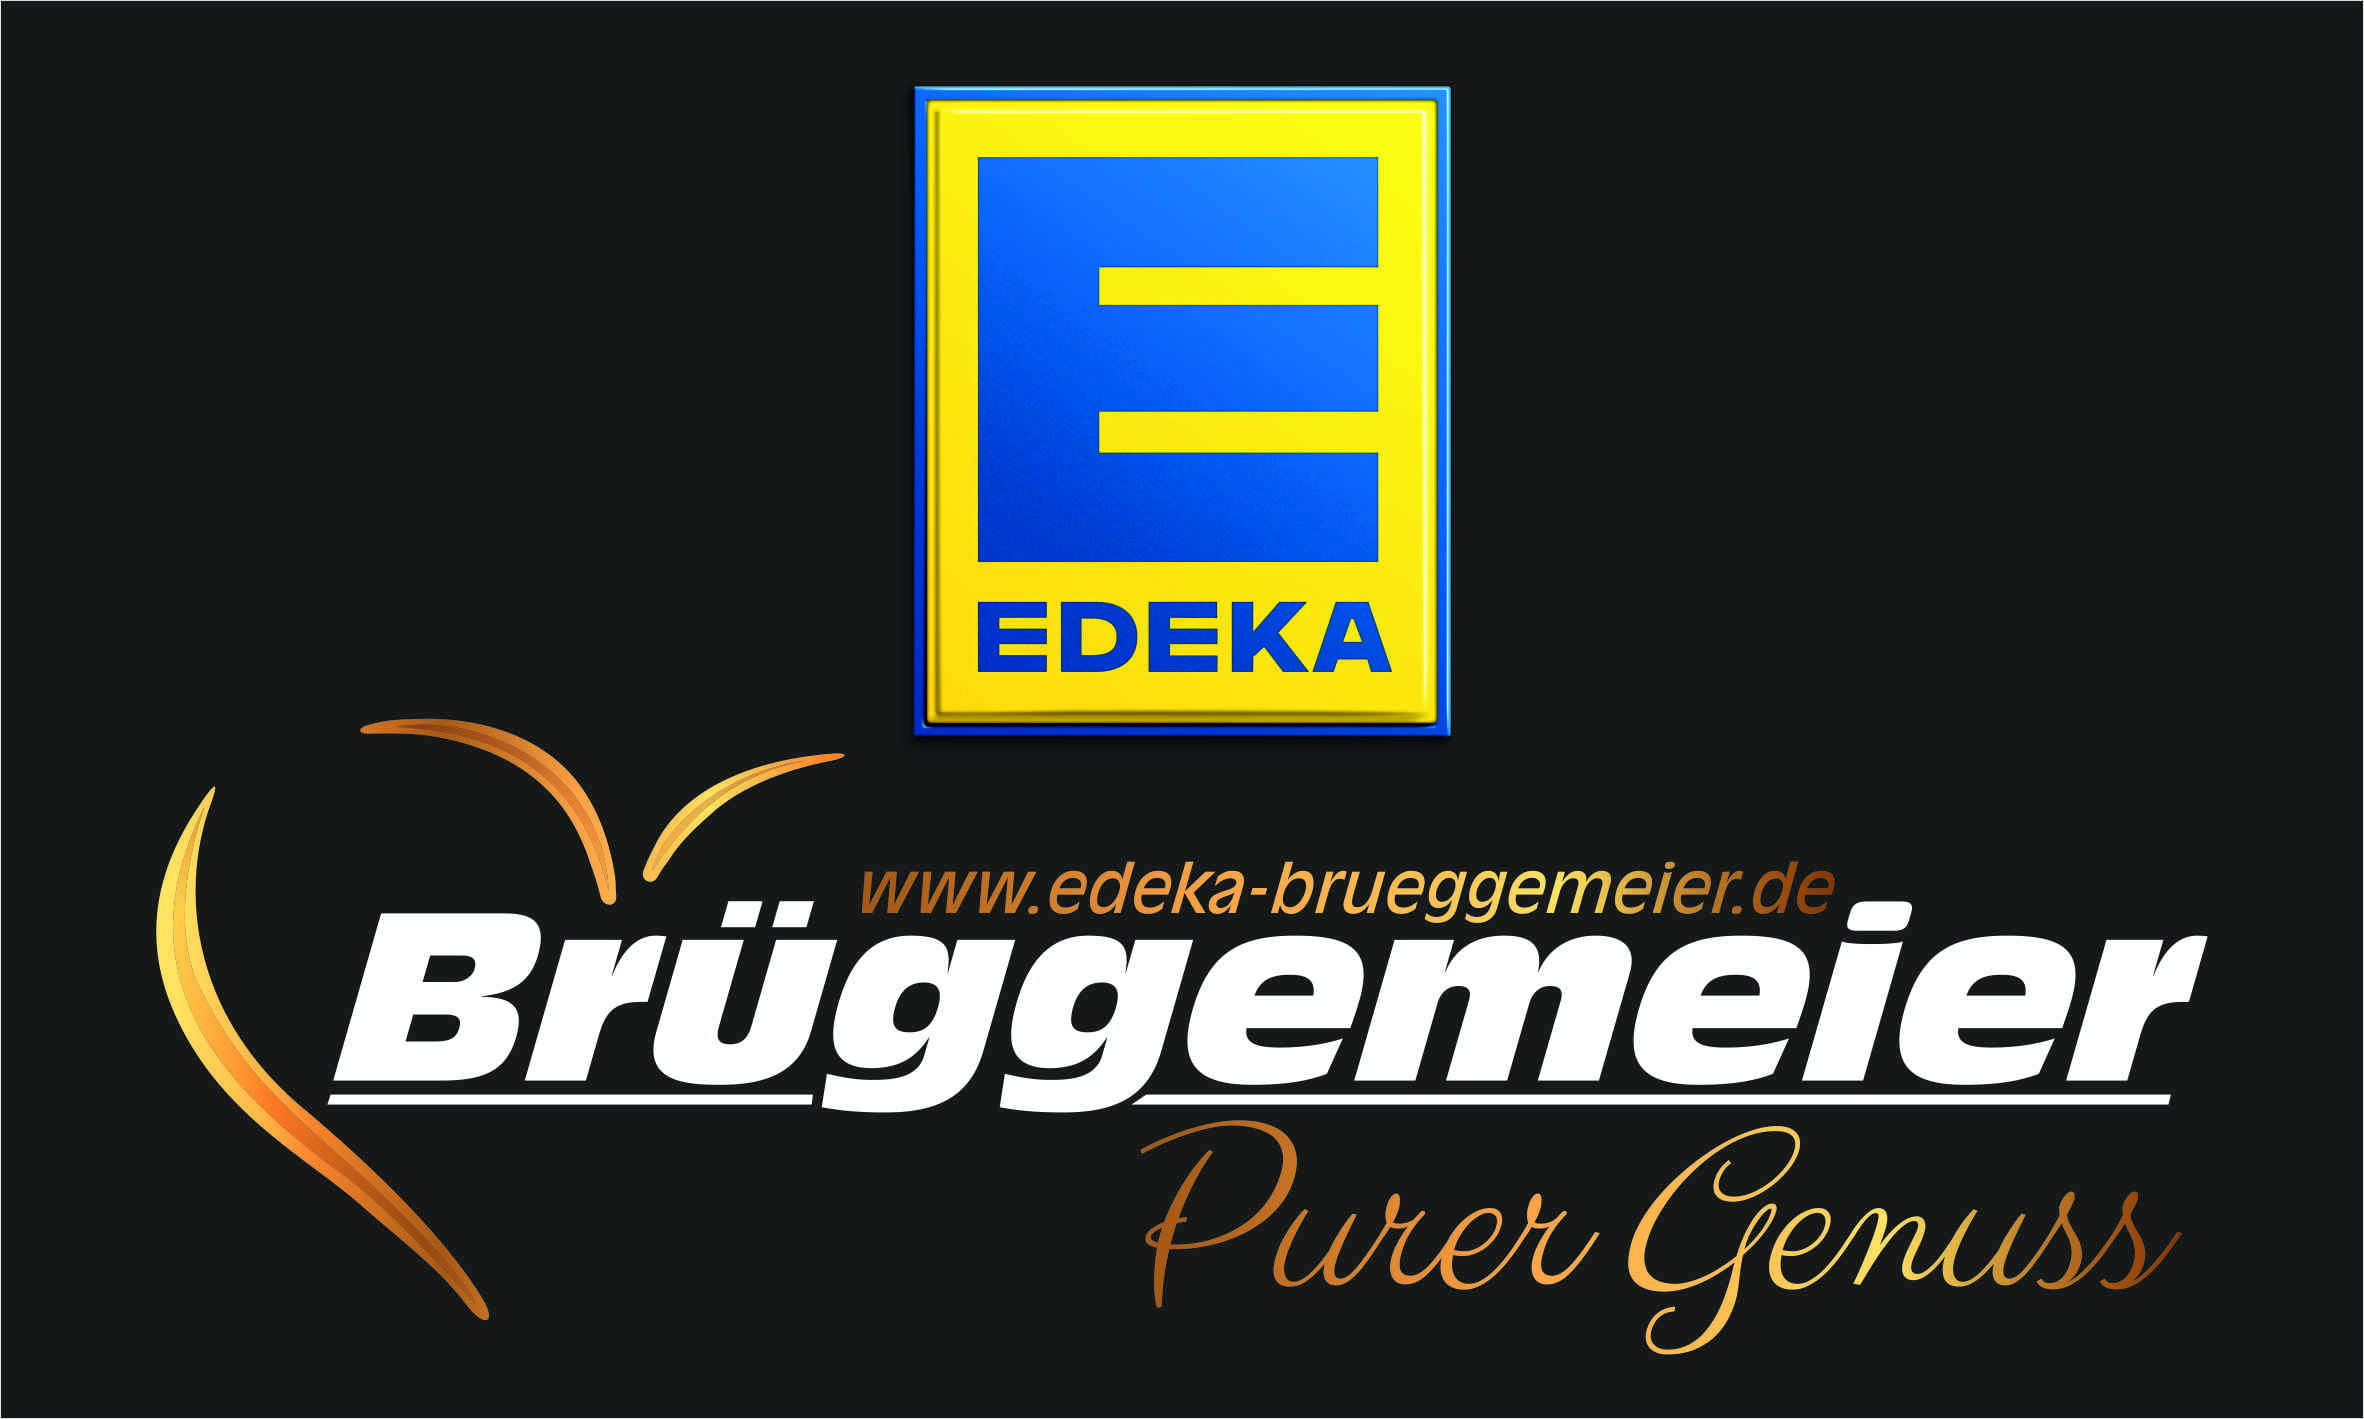 EDEKA Brüggemeier